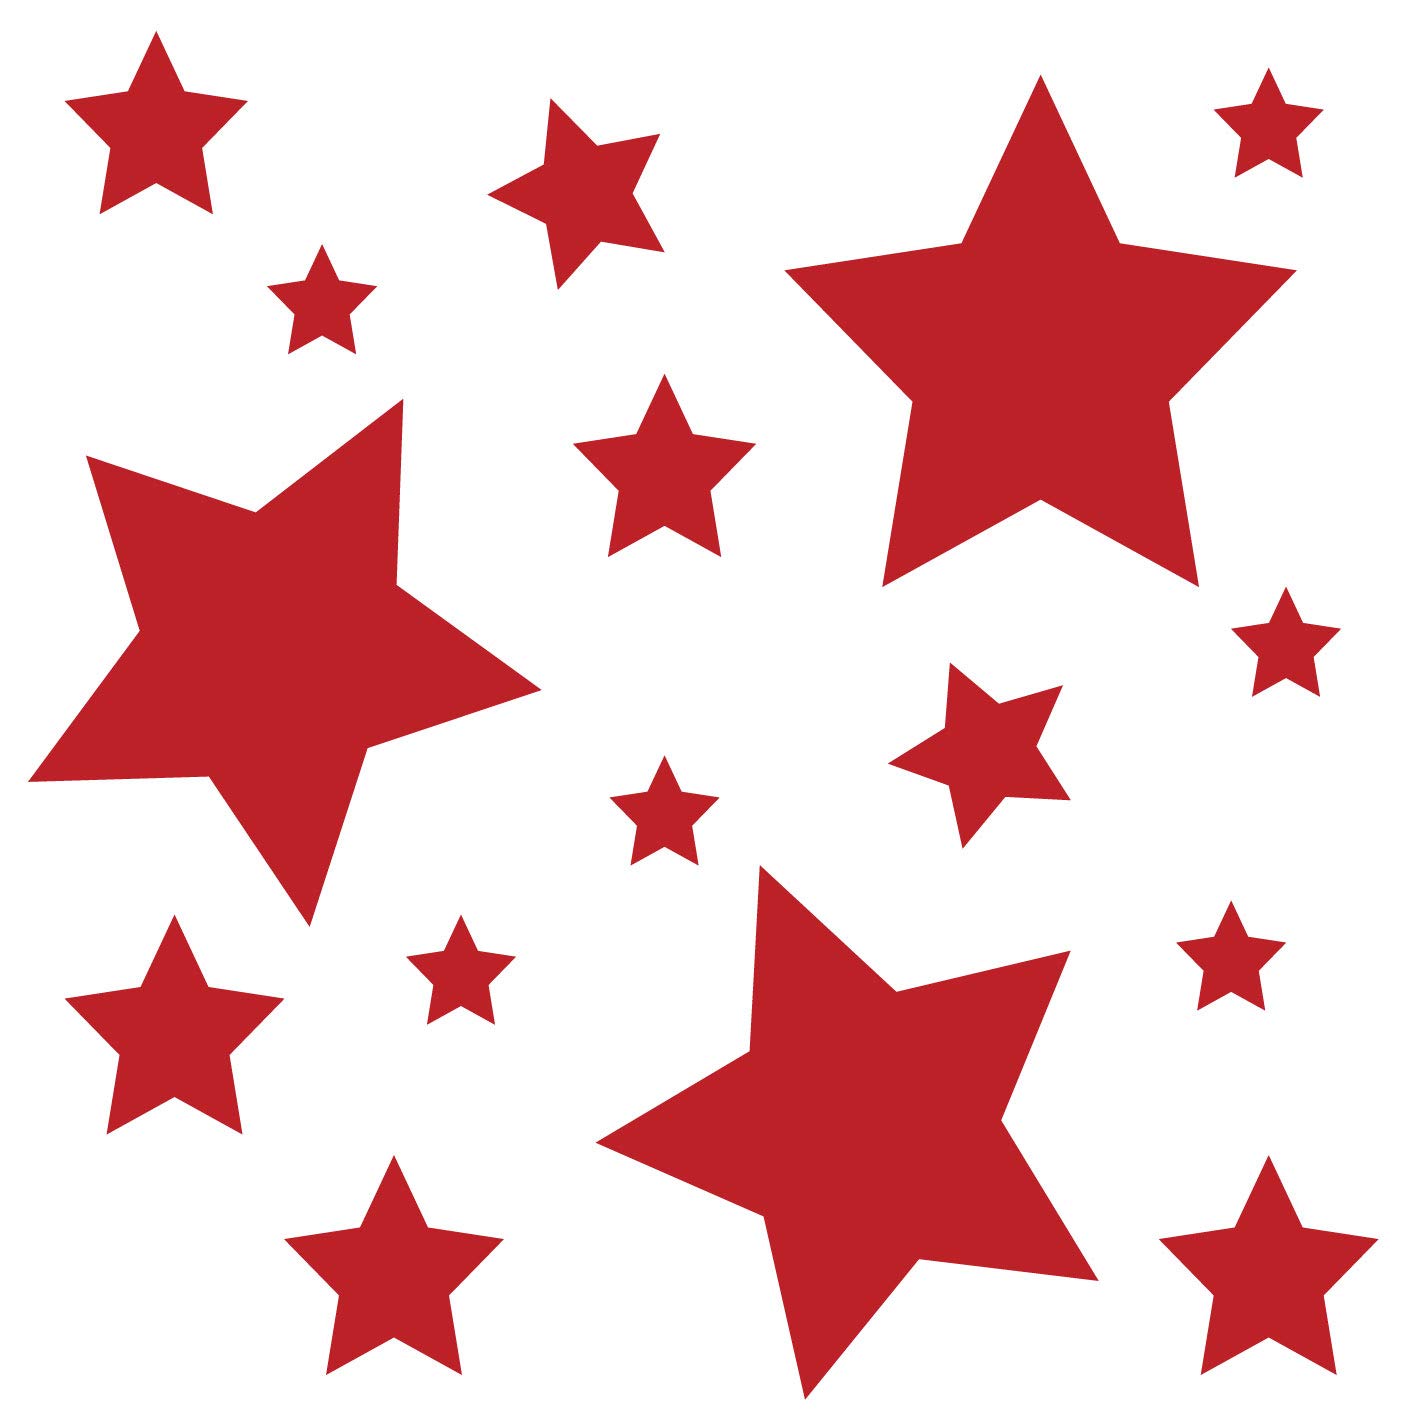 kleb-Drauf® | 18 Sterne | Rot - glänzend | Autoaufkleber Autosticker Decal Aufkleber Sticker | Auto Car Motorrad Fahrrad Roller Bike | Deko Tuning Stickerbomb Styling Wrapping von kleb-drauf.de